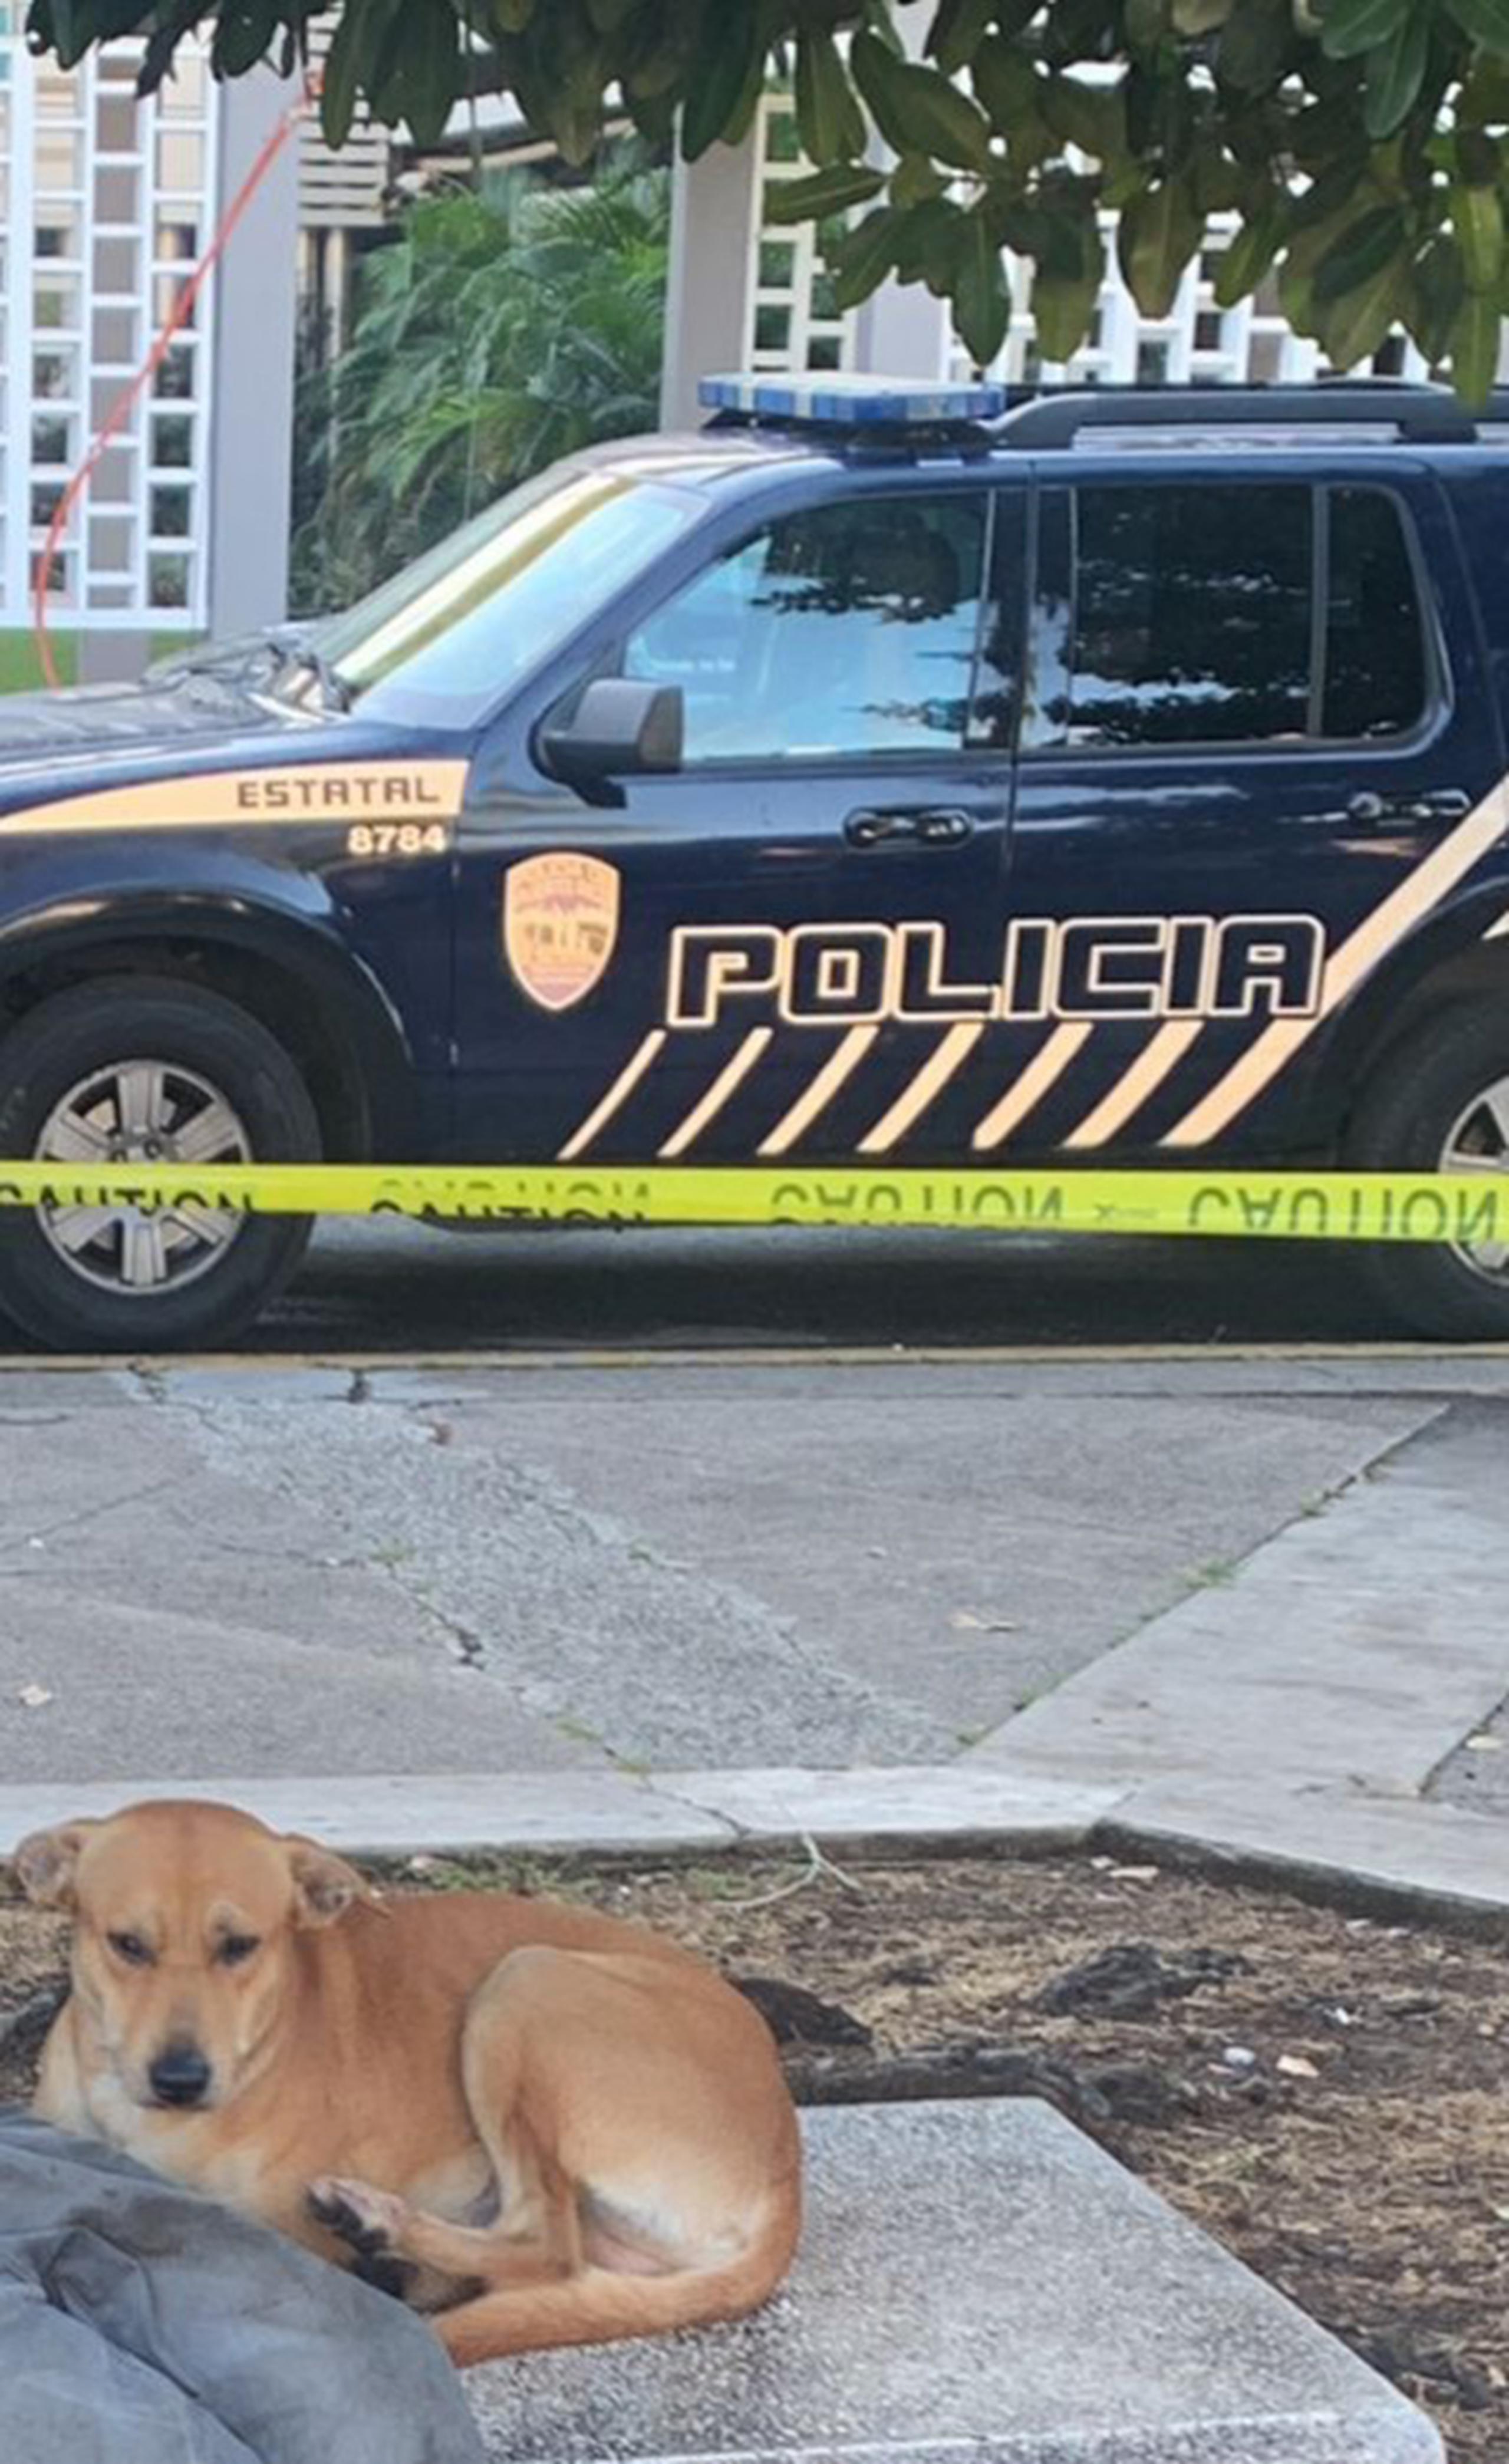 La mascota del sexagenario fallecido no se despegaba del lugar conmoviendo a todo aquel que observaba la escena, según informó el Negociado de la Policía.